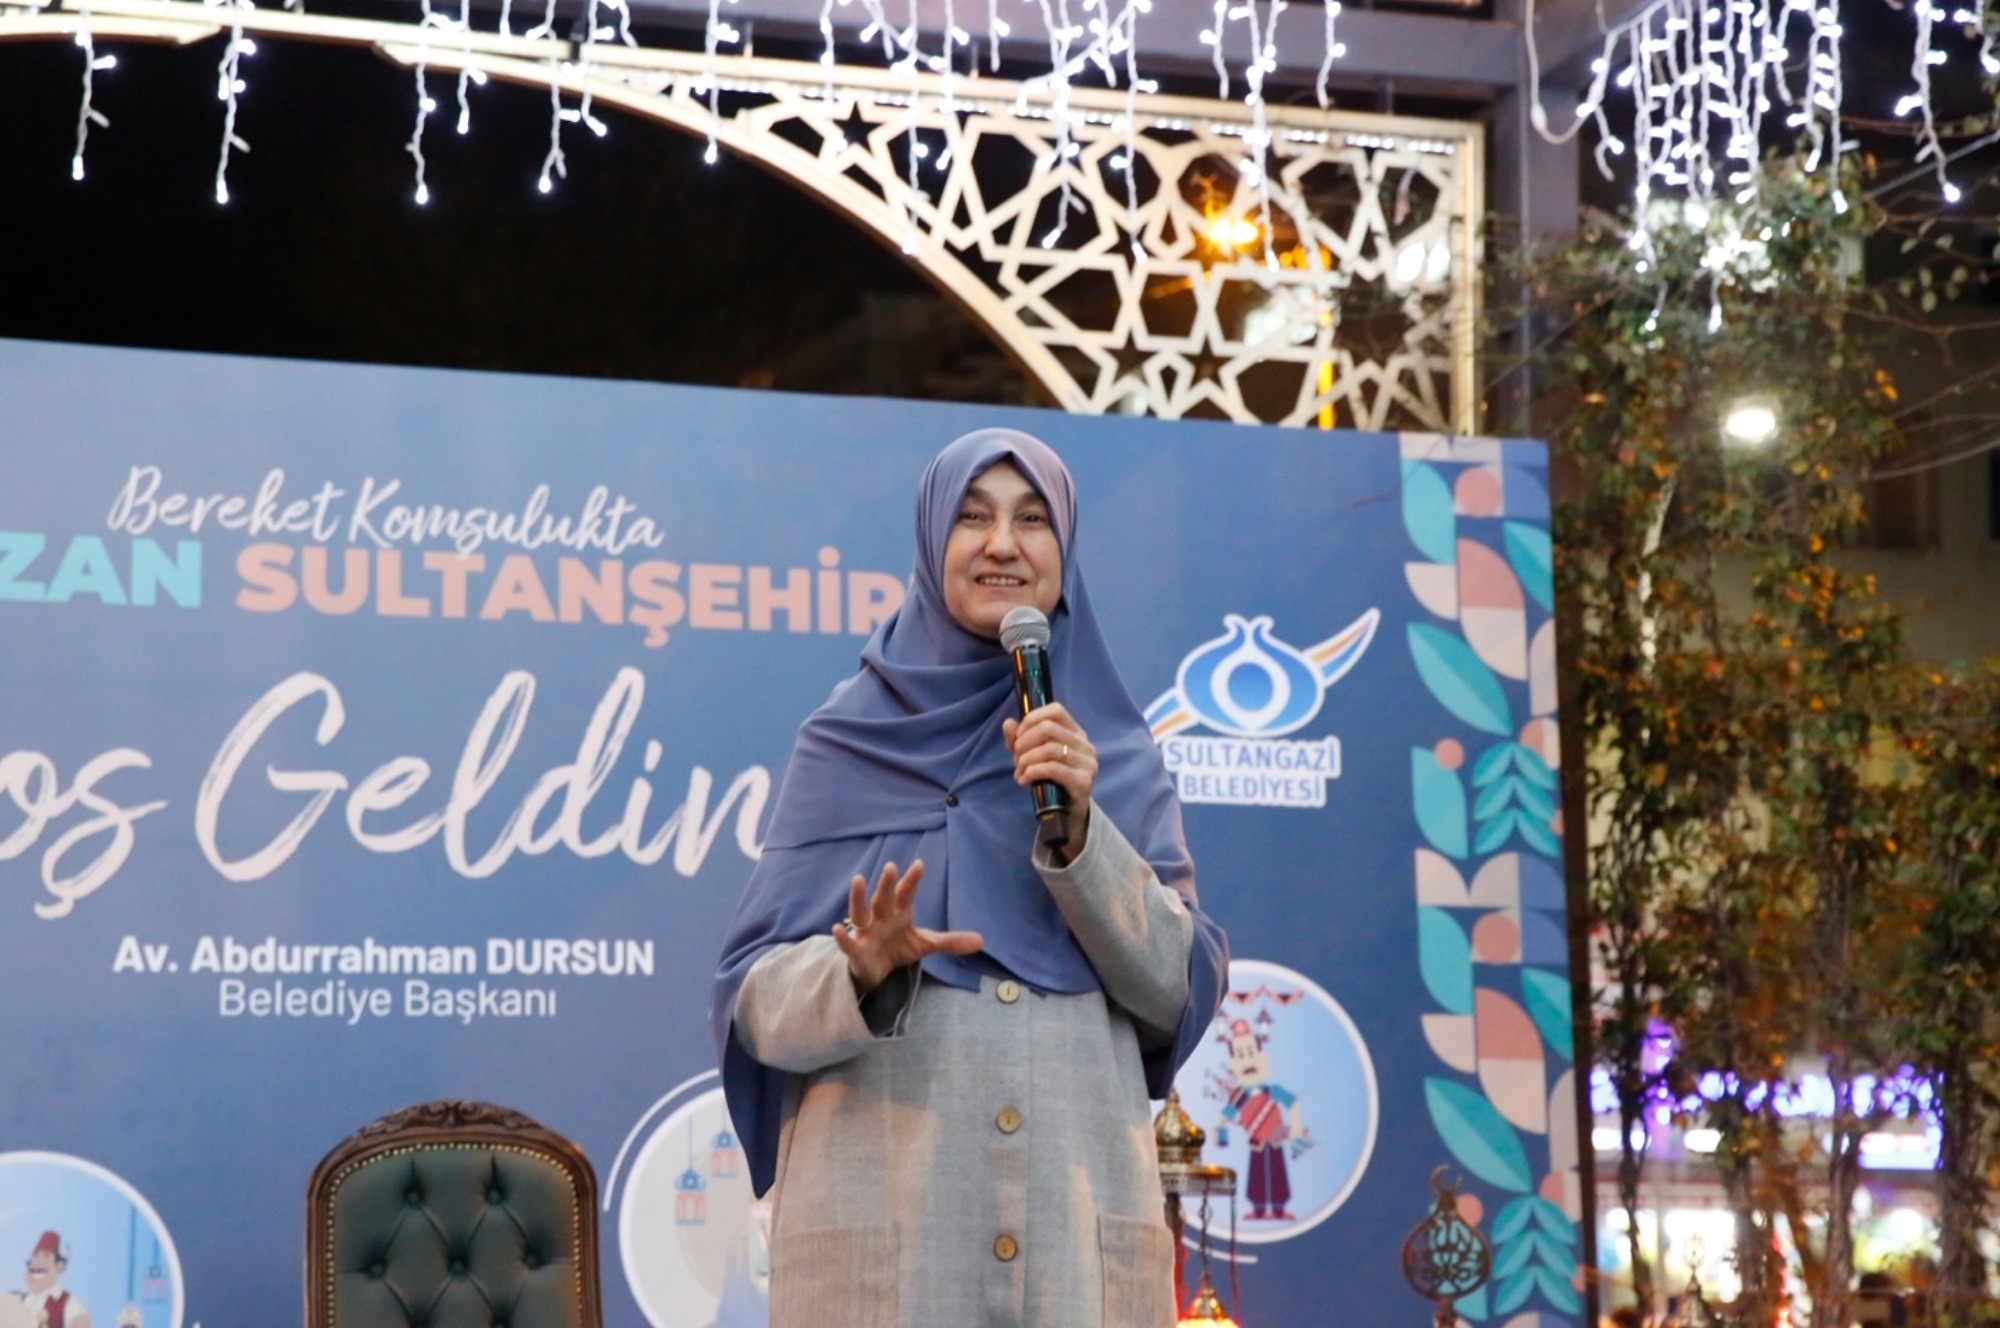  Sultangazi’de Saliha Erdim ile Ramazan sohbeti büyük ilgi gördü